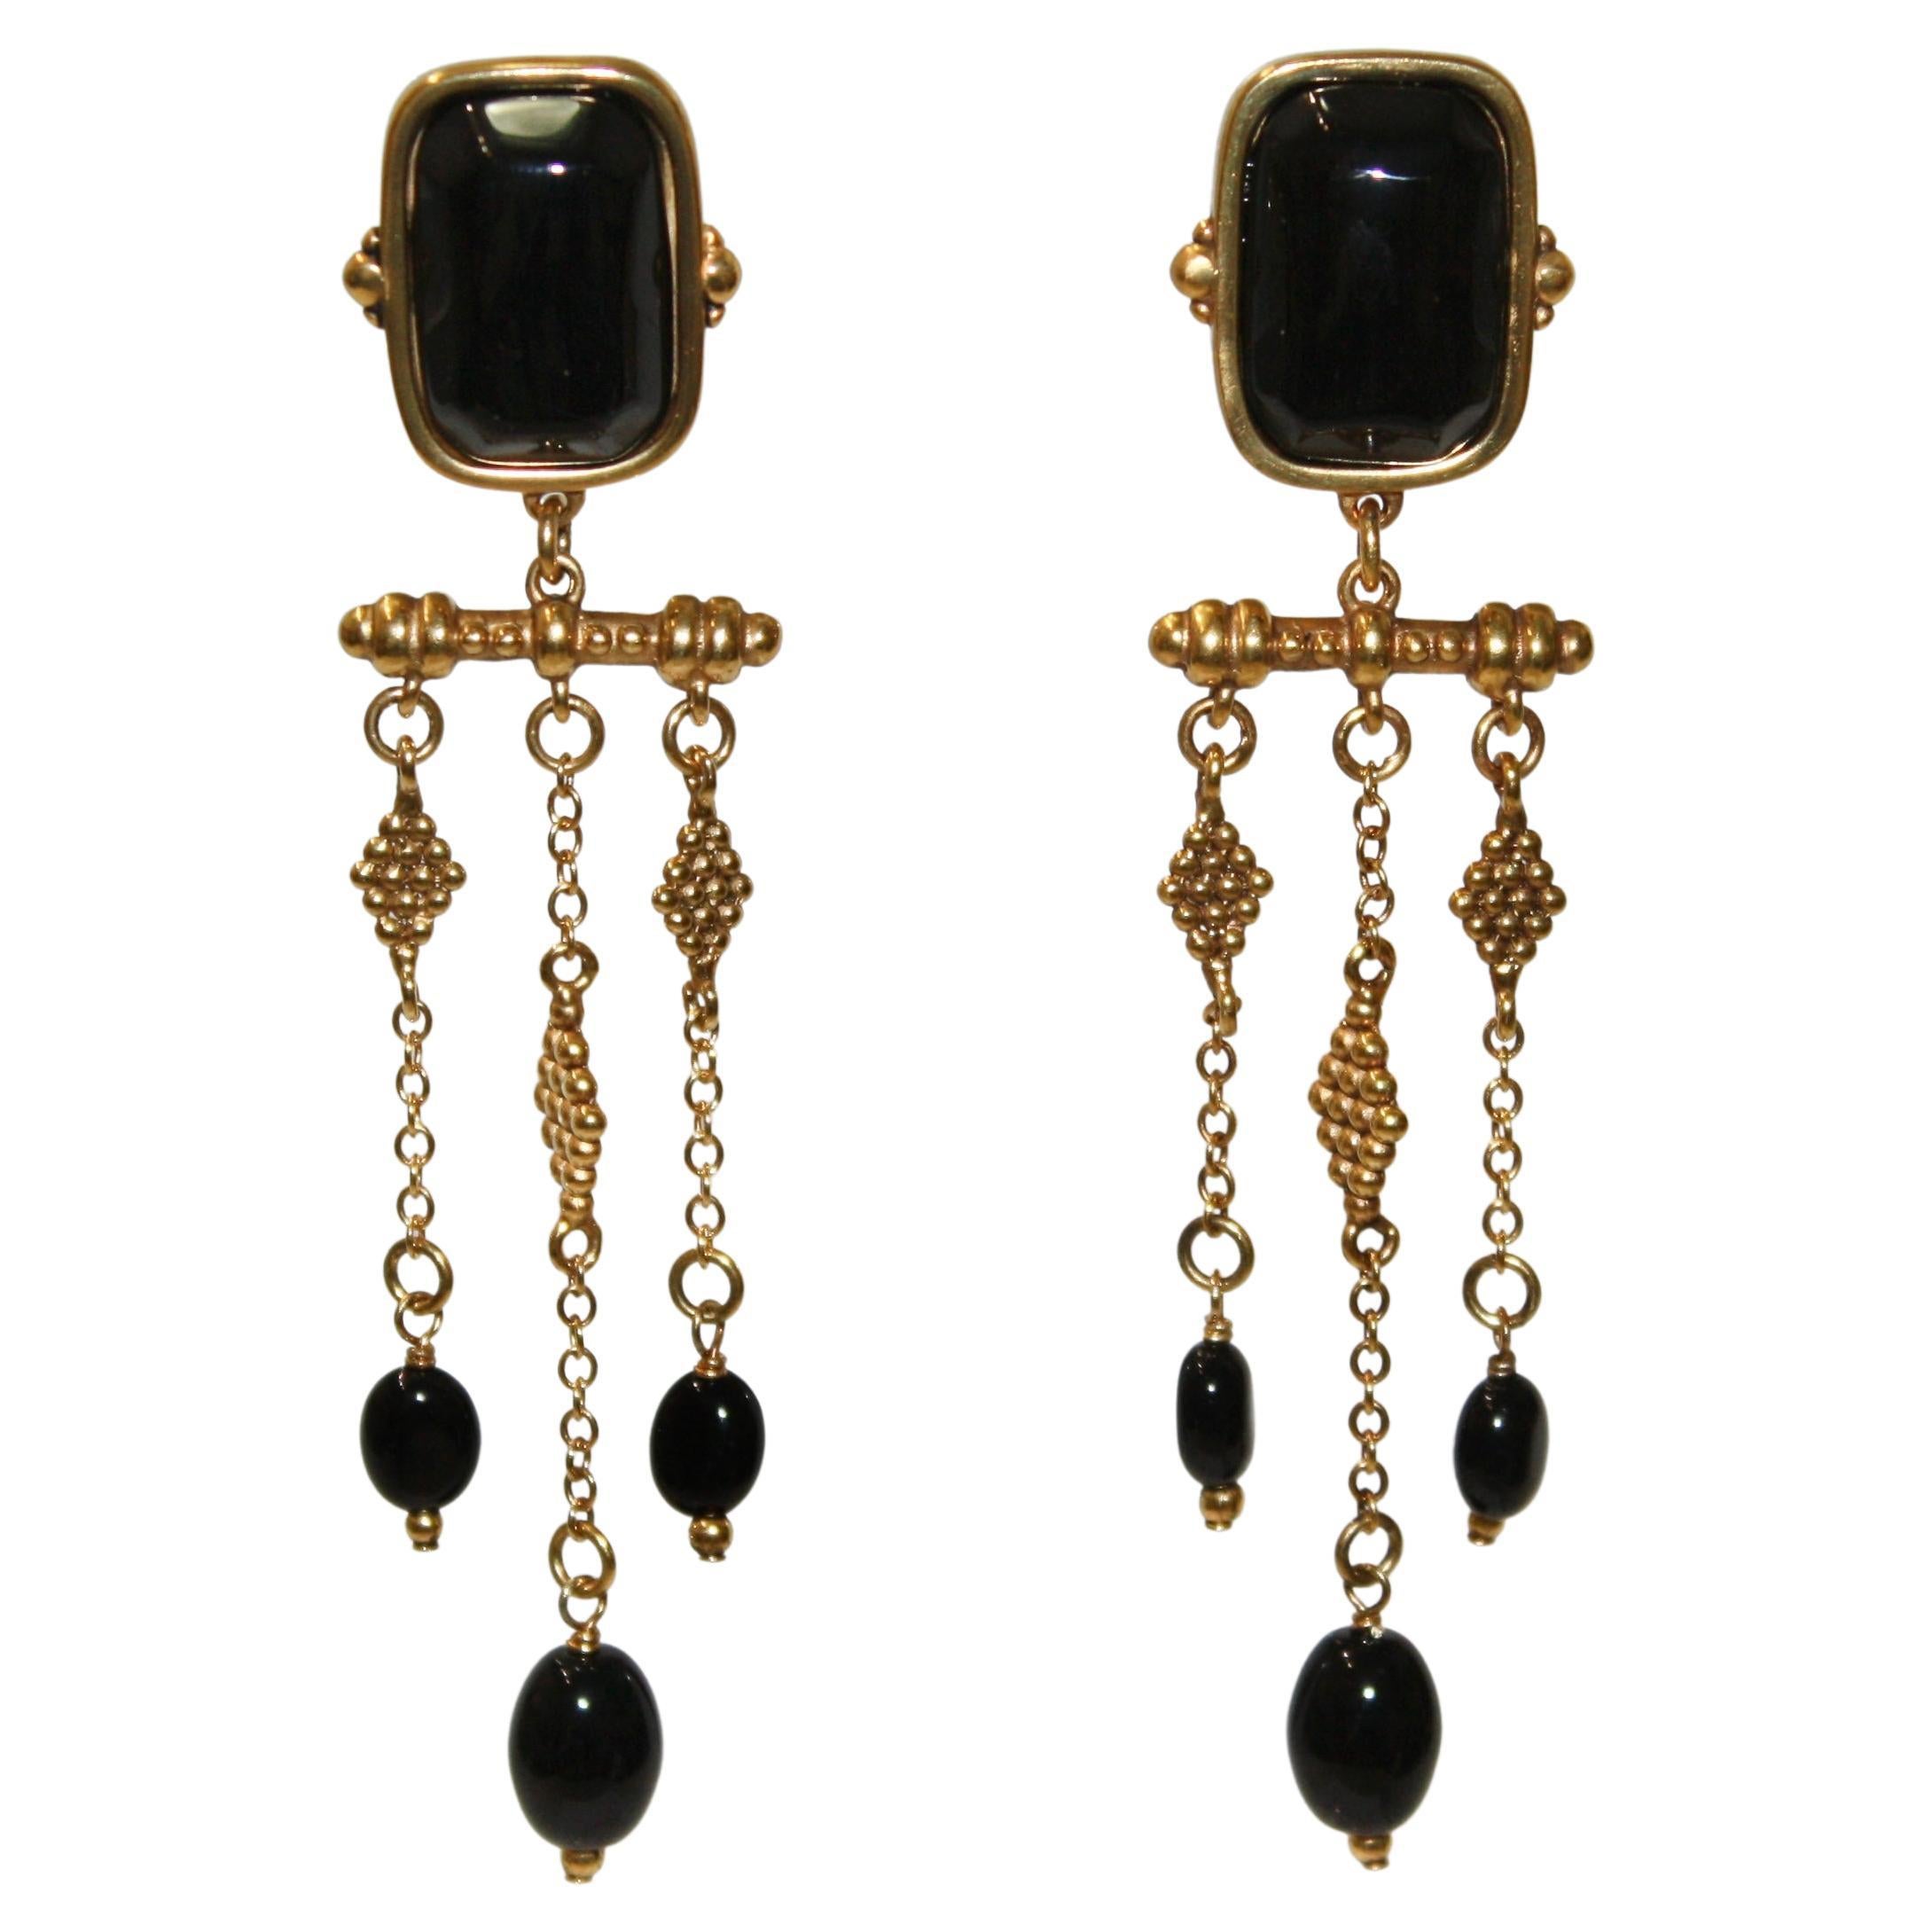 Goossens Paris Long Black Agate Earrings 